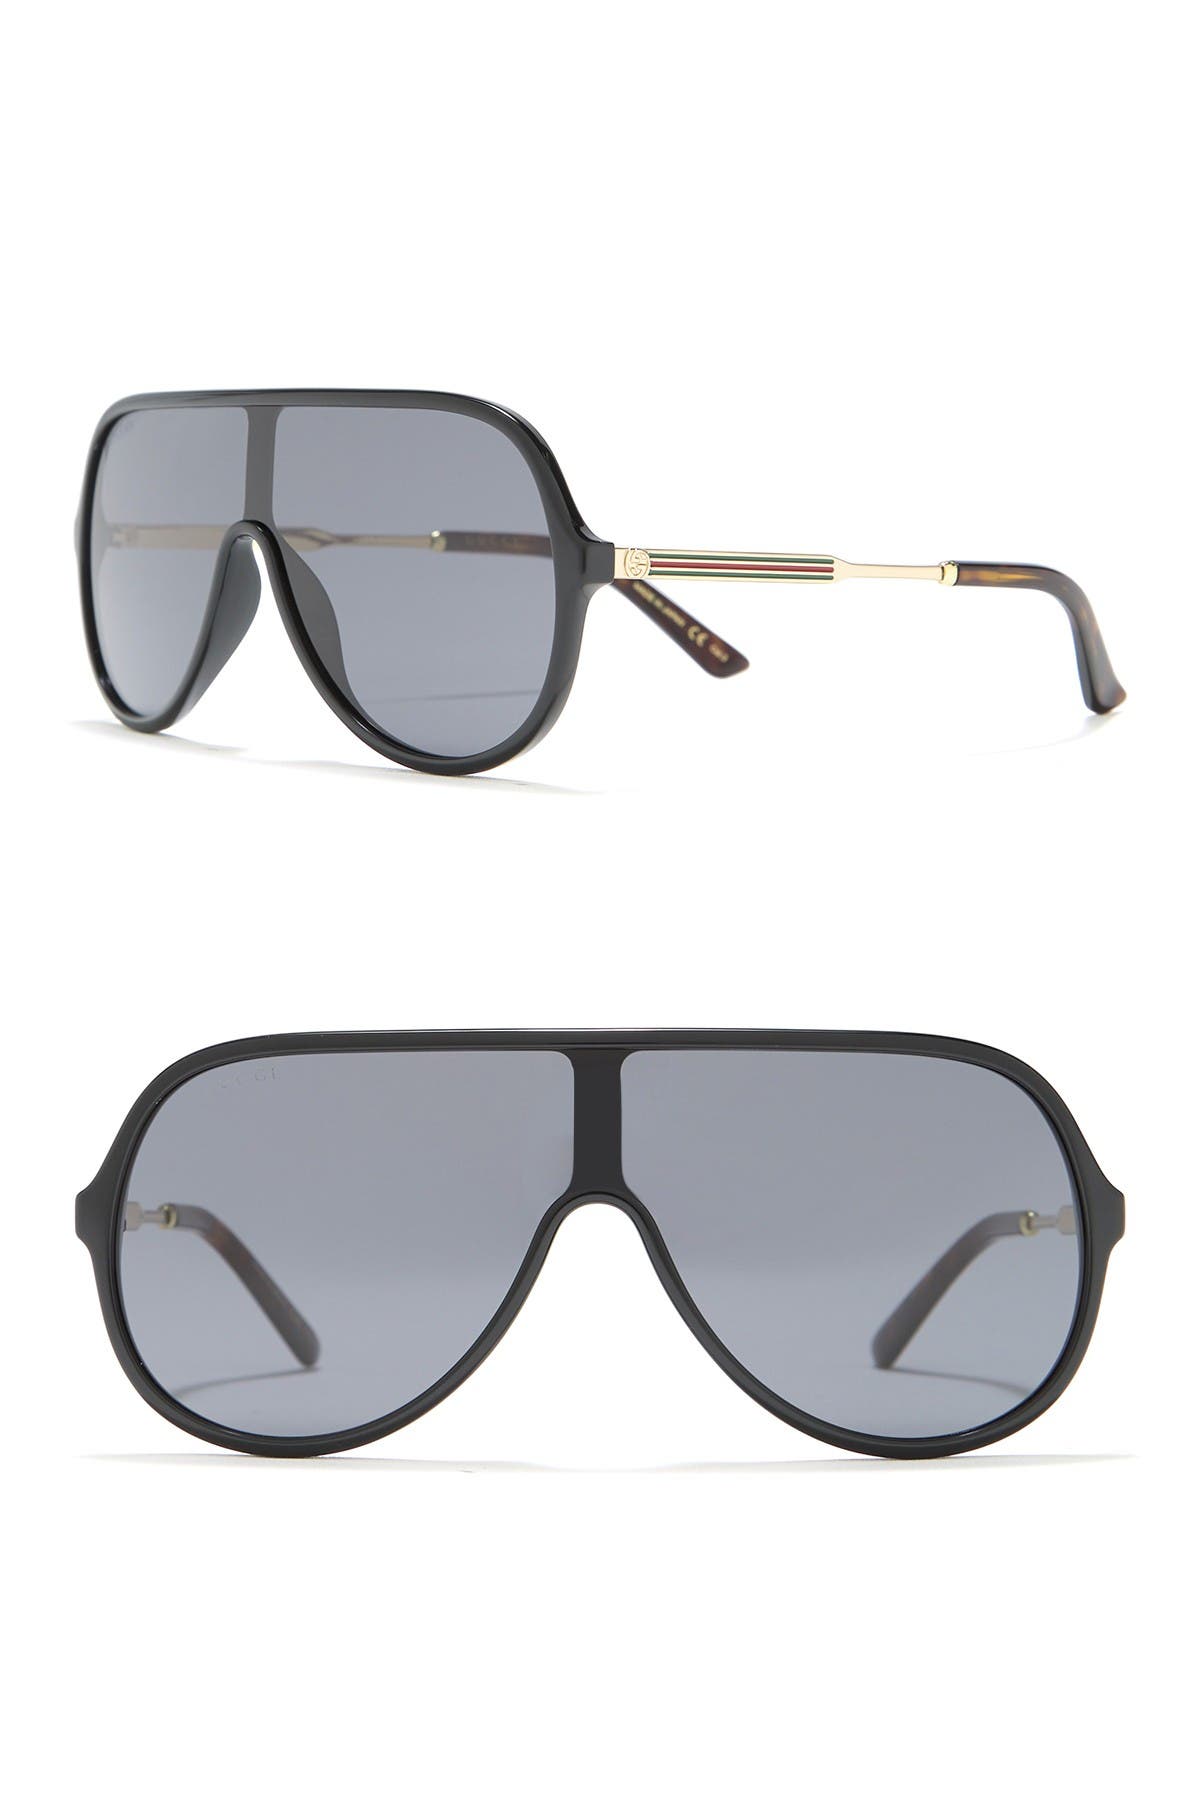 gucci 99mm shield sunglasses